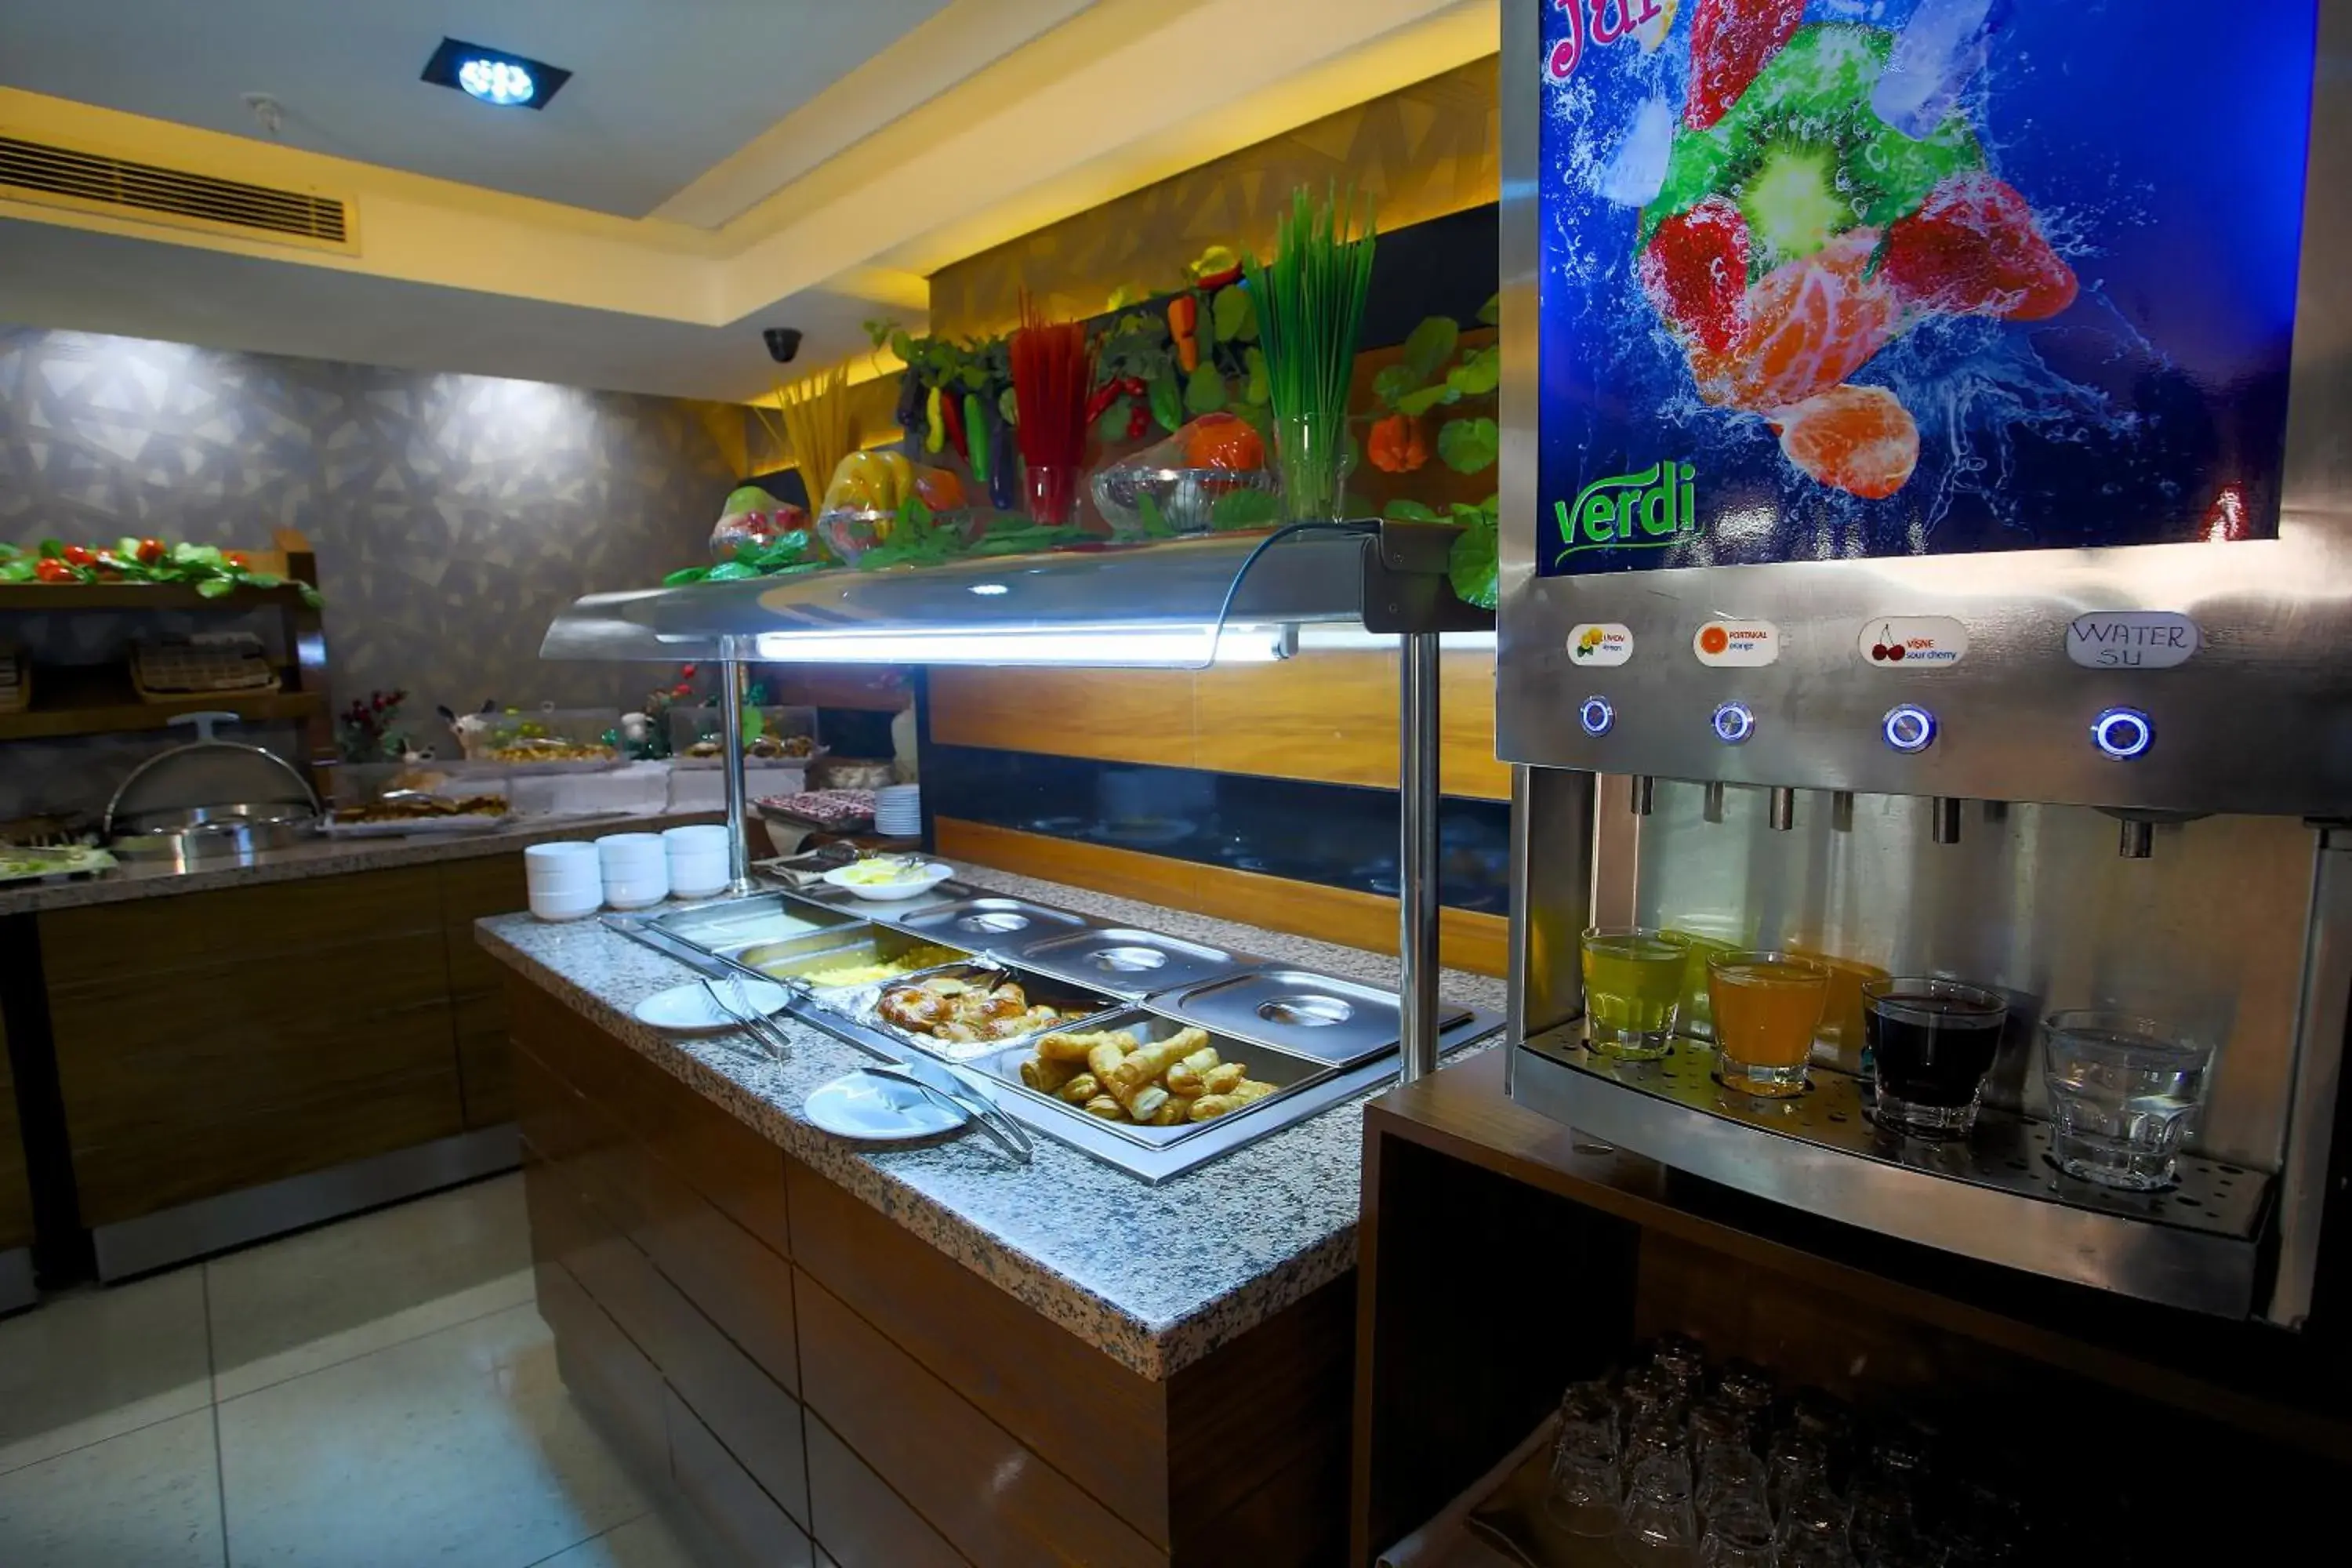 Buffet breakfast in Hotel Istanbul Trend